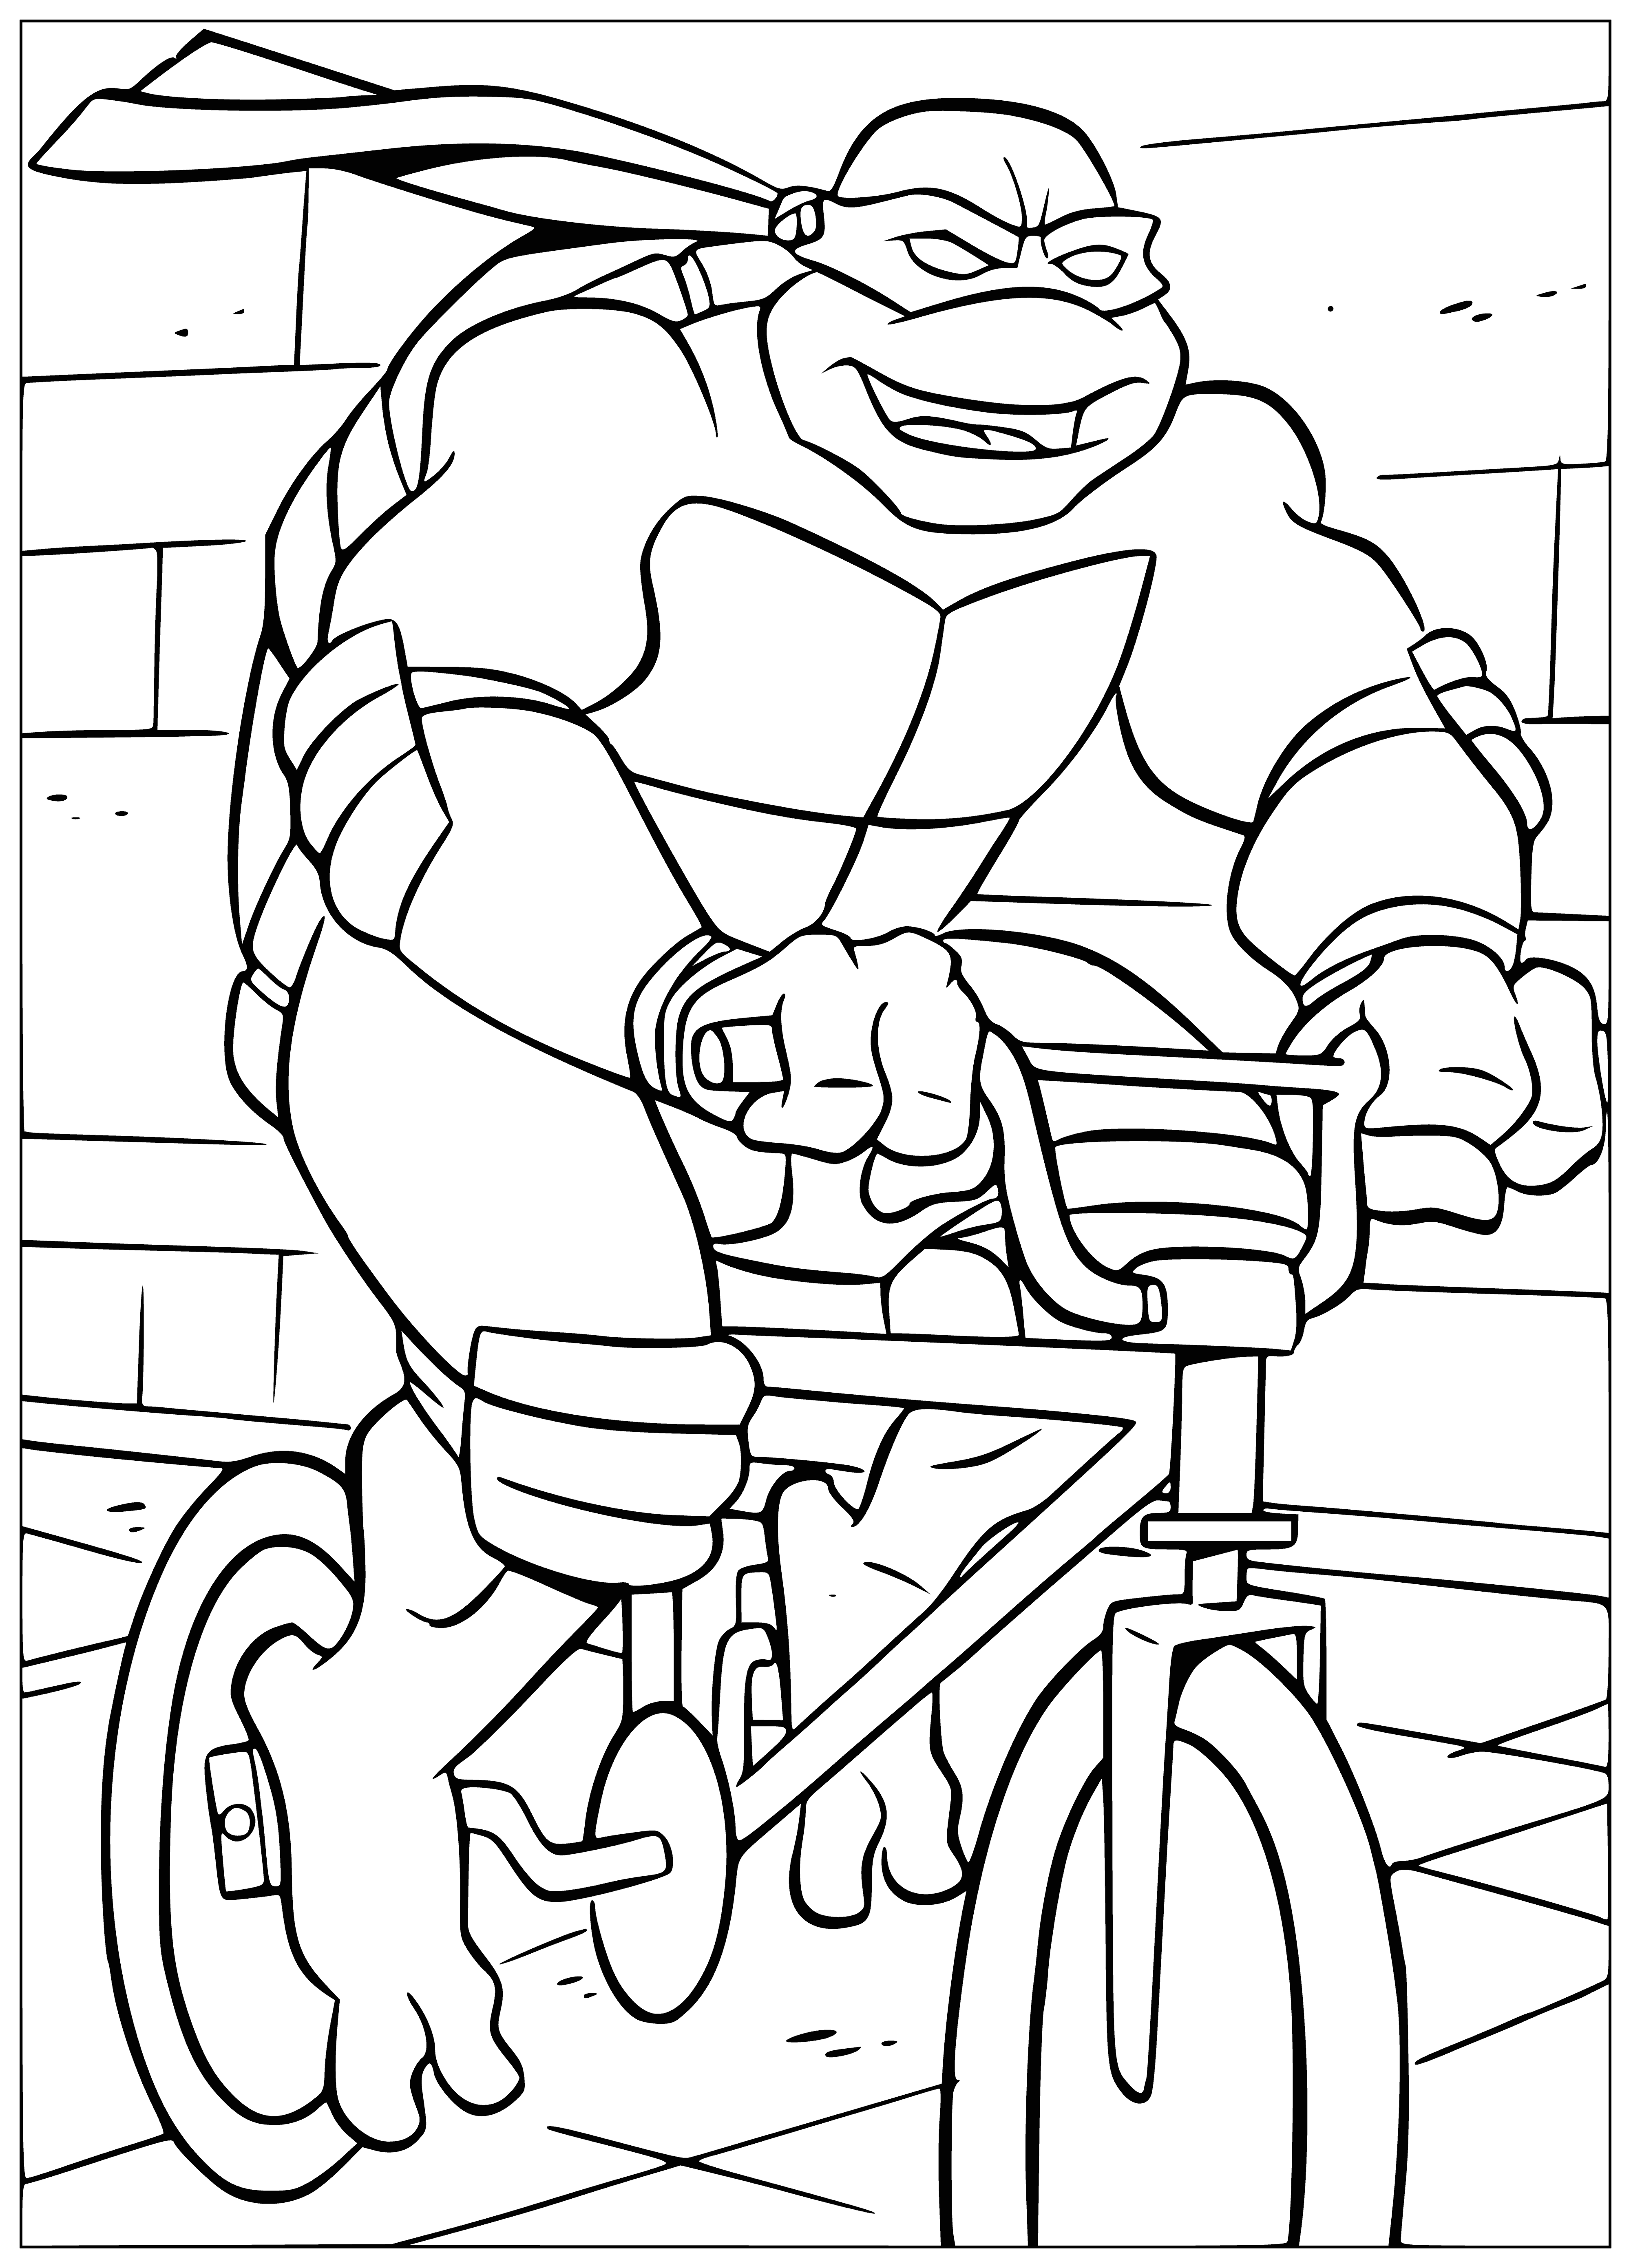 Ninja on a bike coloring page